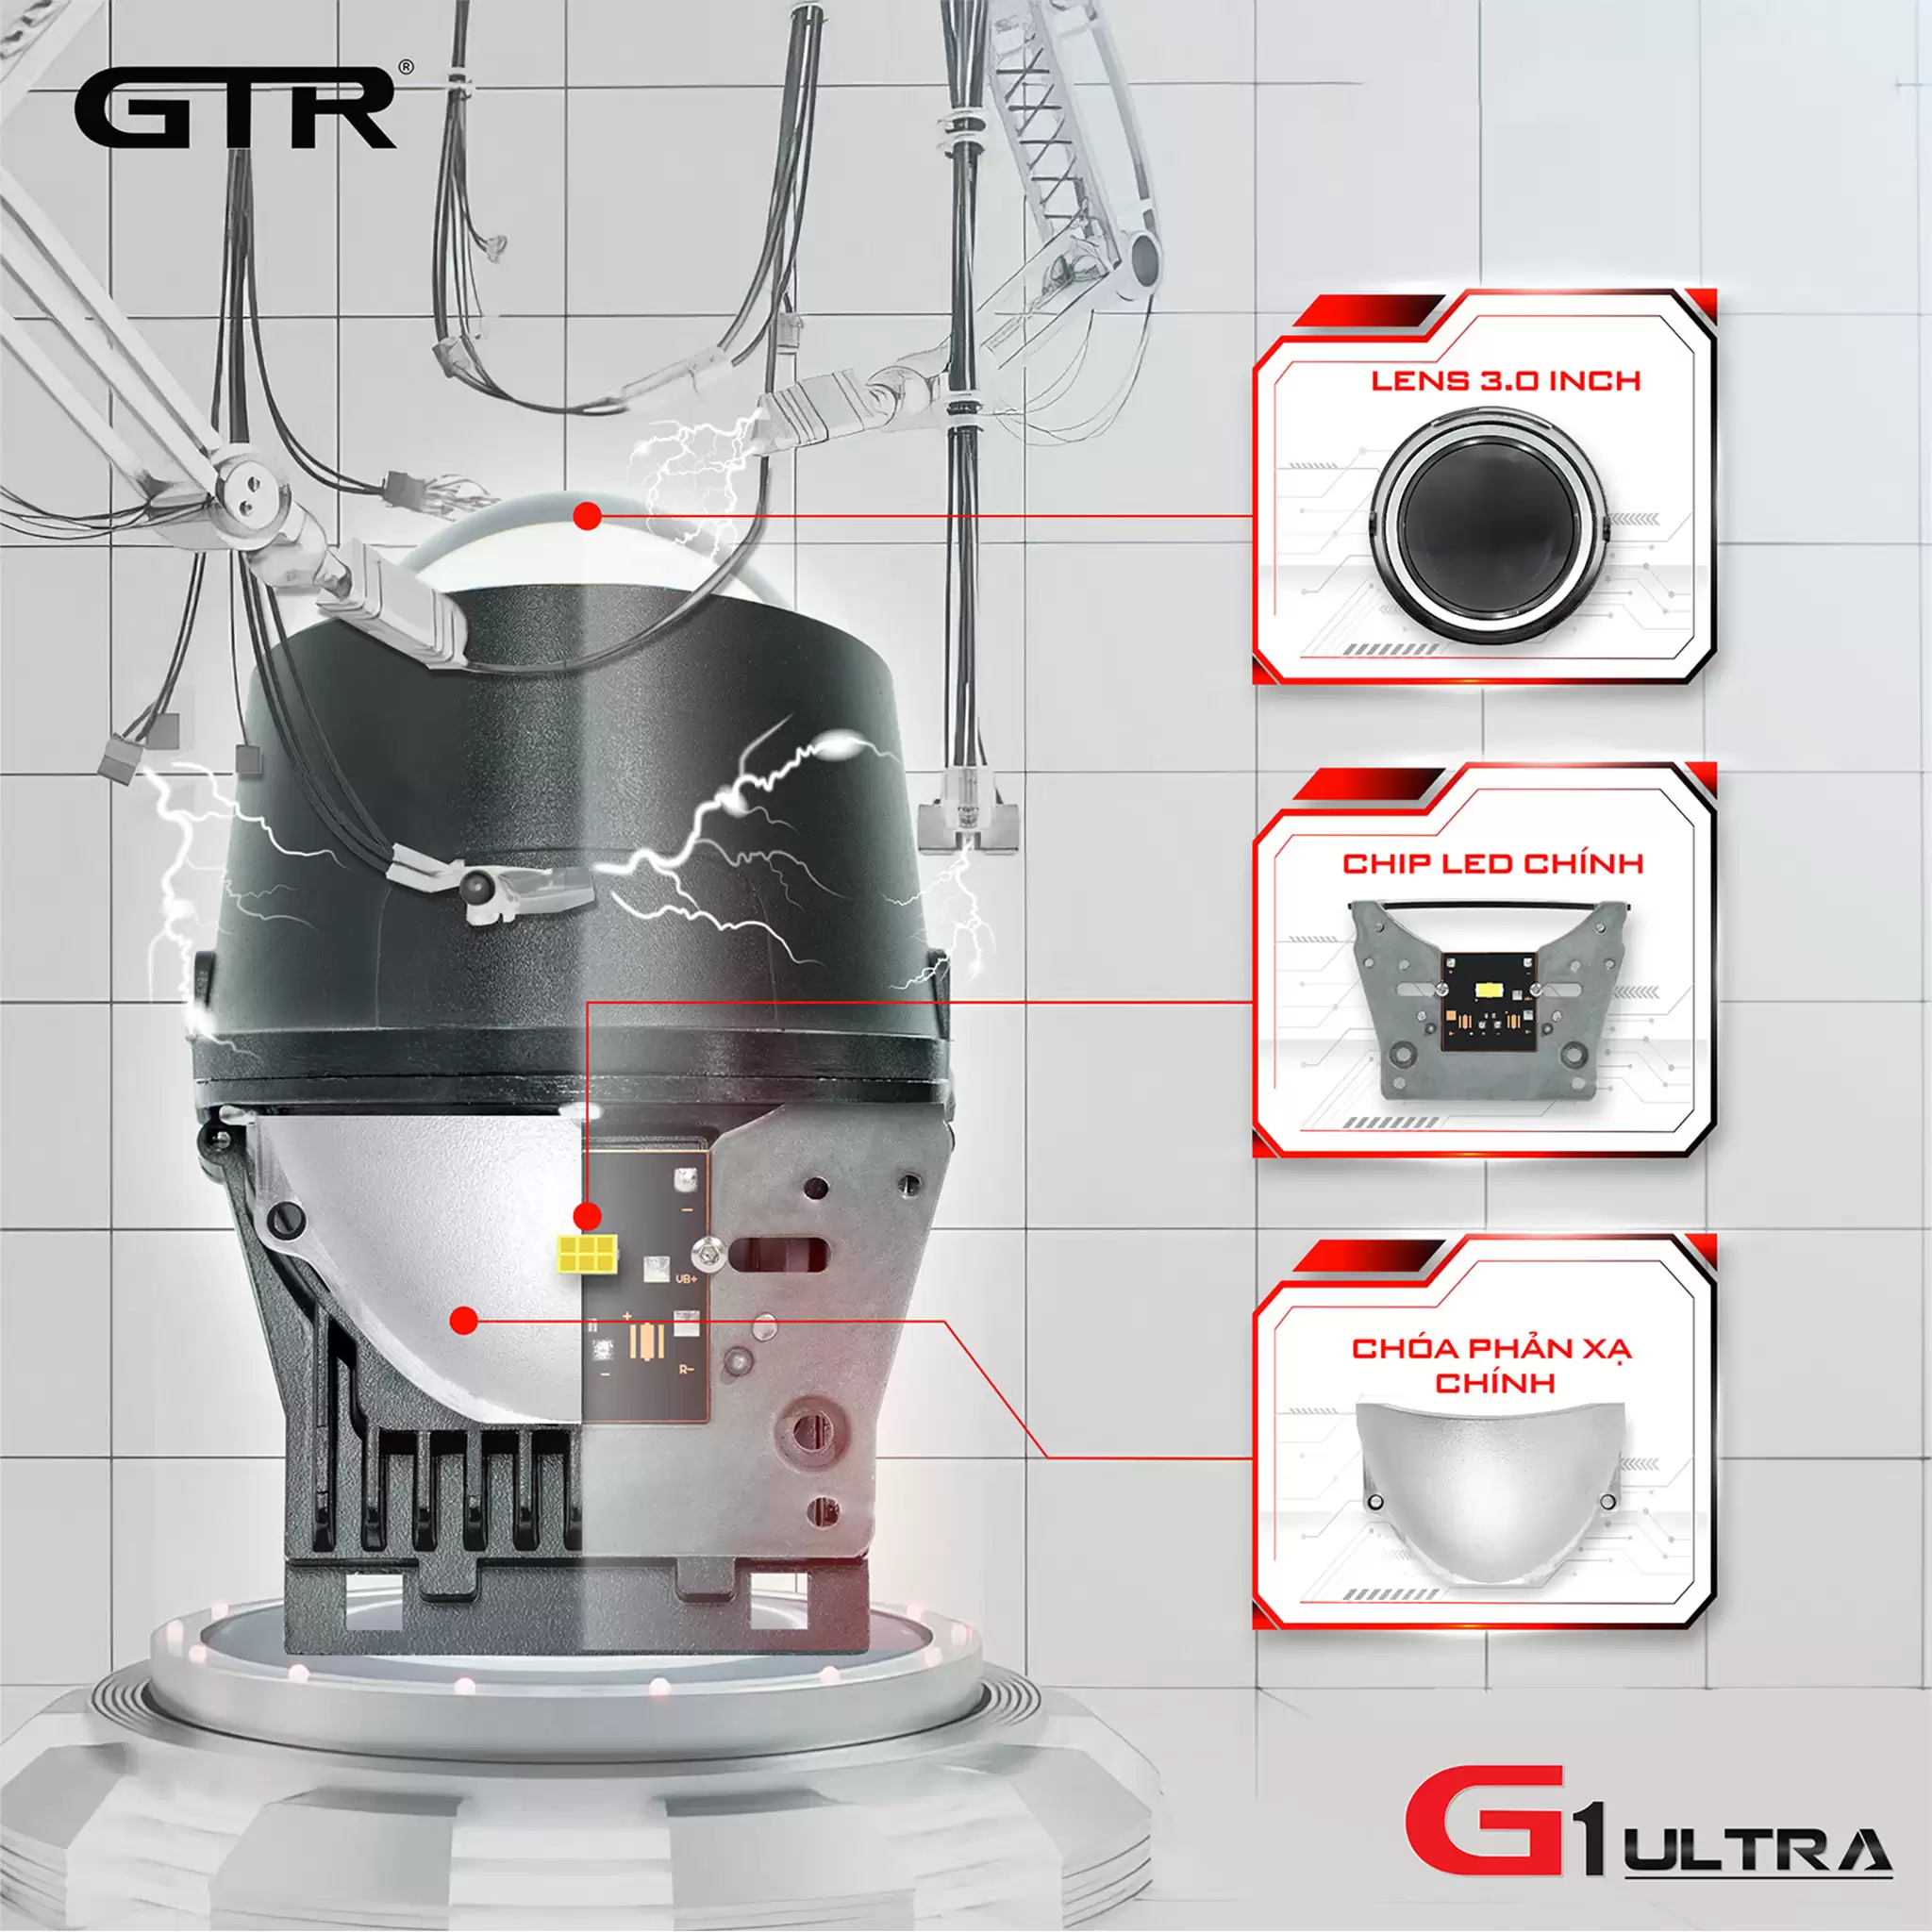 Đèn bi gầm led GTR G1 Ultra Thanh Hóa